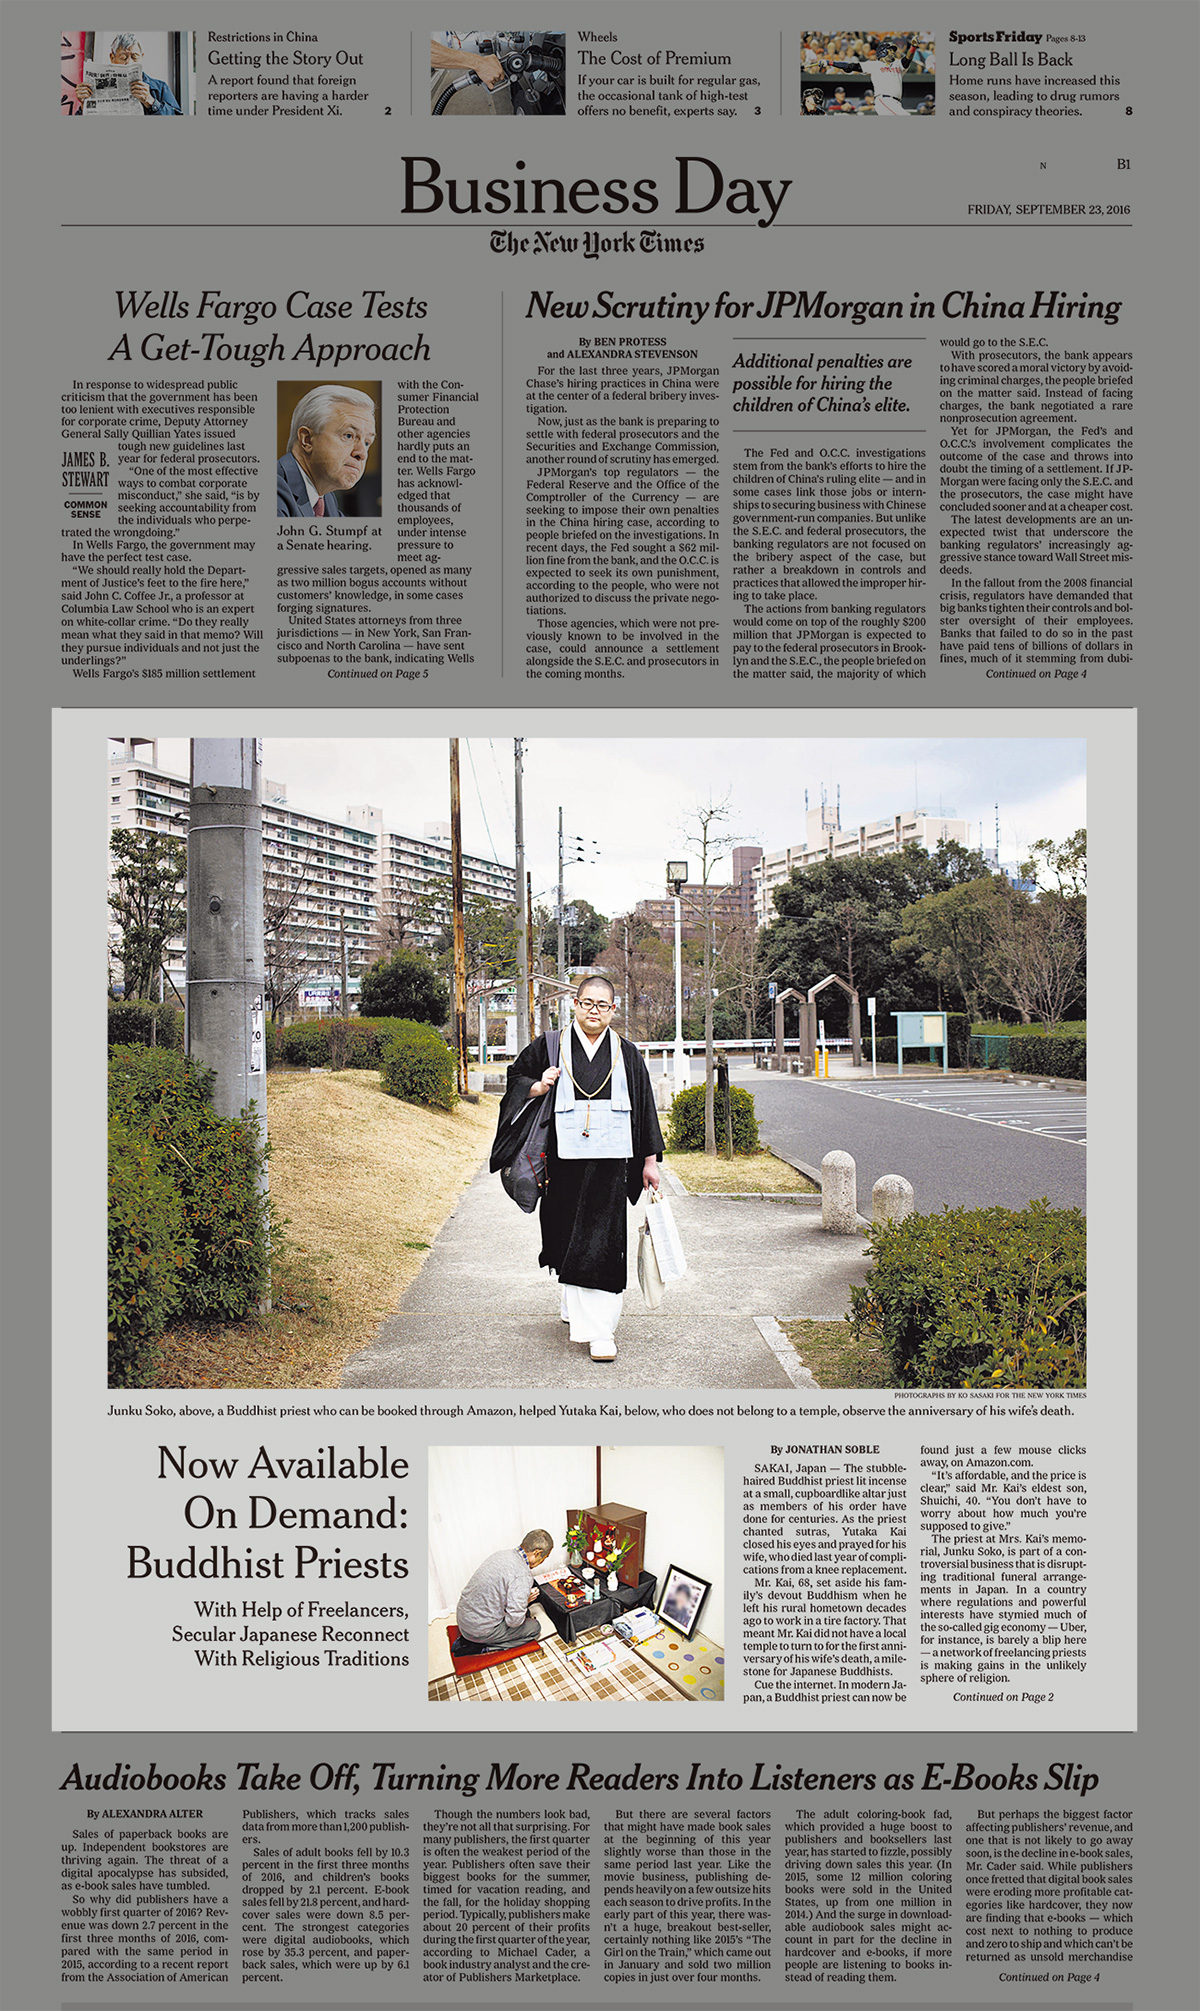 9月23日の
『The Japan Times / International New York Times』にて
葬儀式・法要法事における
「寺院紹介（Amazonネットサービス）」に関する
取材記事が掲載されました。（英字版）4